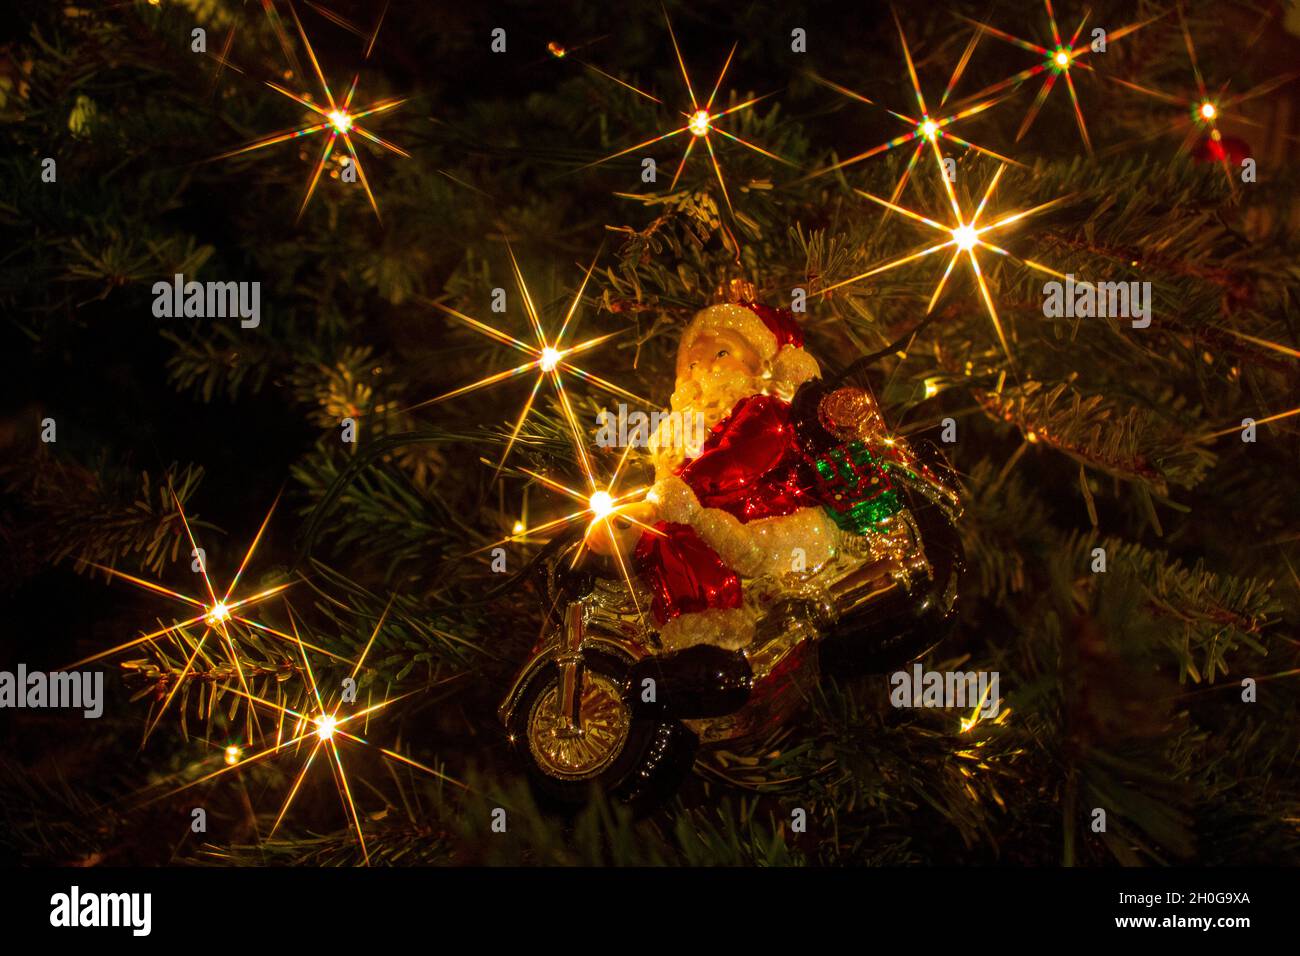 Weihnachtsmann auf Motorrad Christbaumschmuck am Christbaum Stock Photo